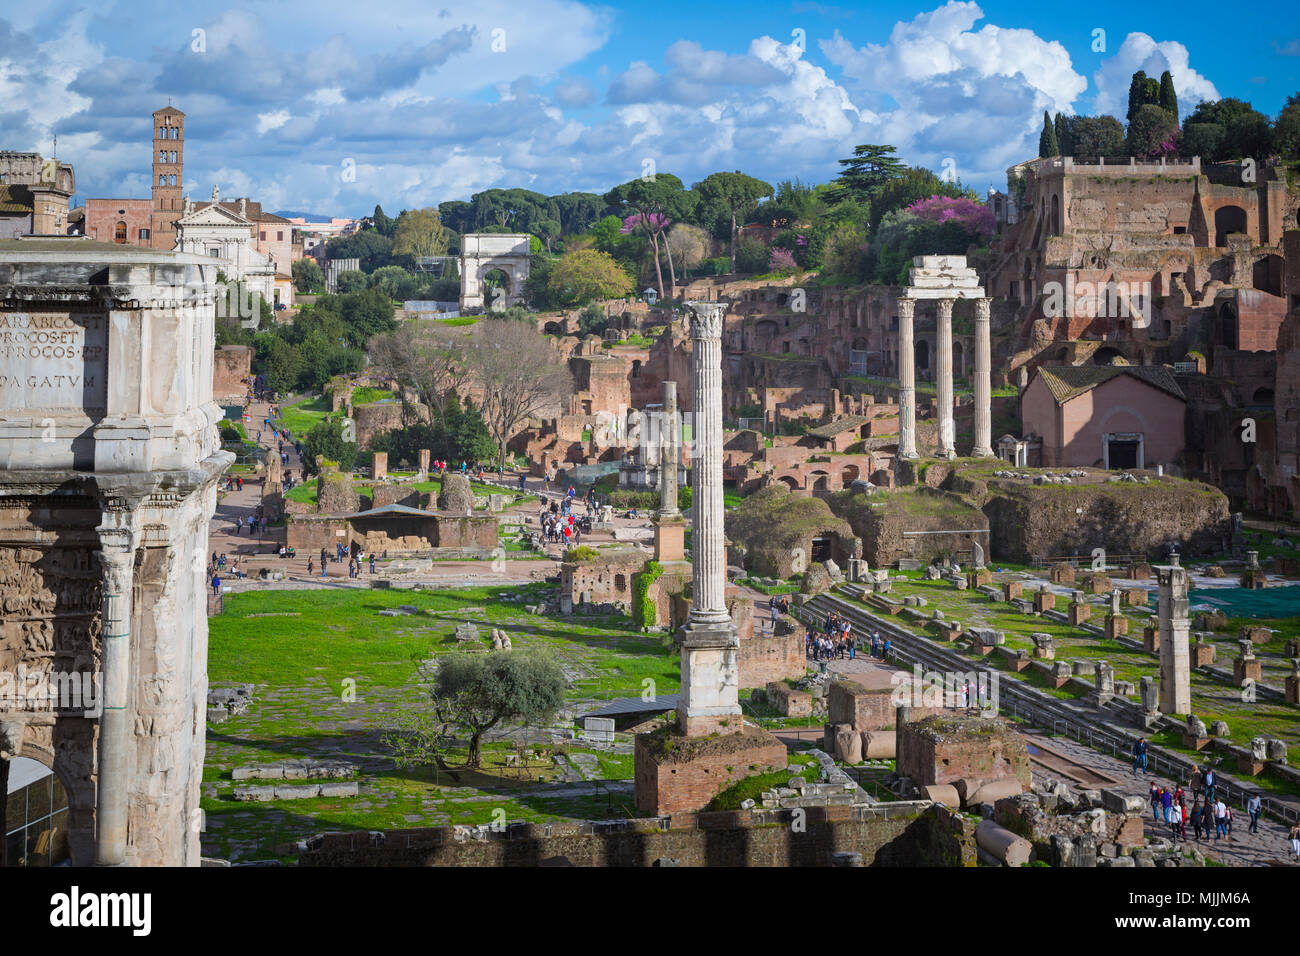 Rom, Italien. Überblick über das Forum Romanum. Das Forum ist Teil des historischen Zentrums von Rom, das ist ein UNESCO-Weltkulturerbe. Stockfoto